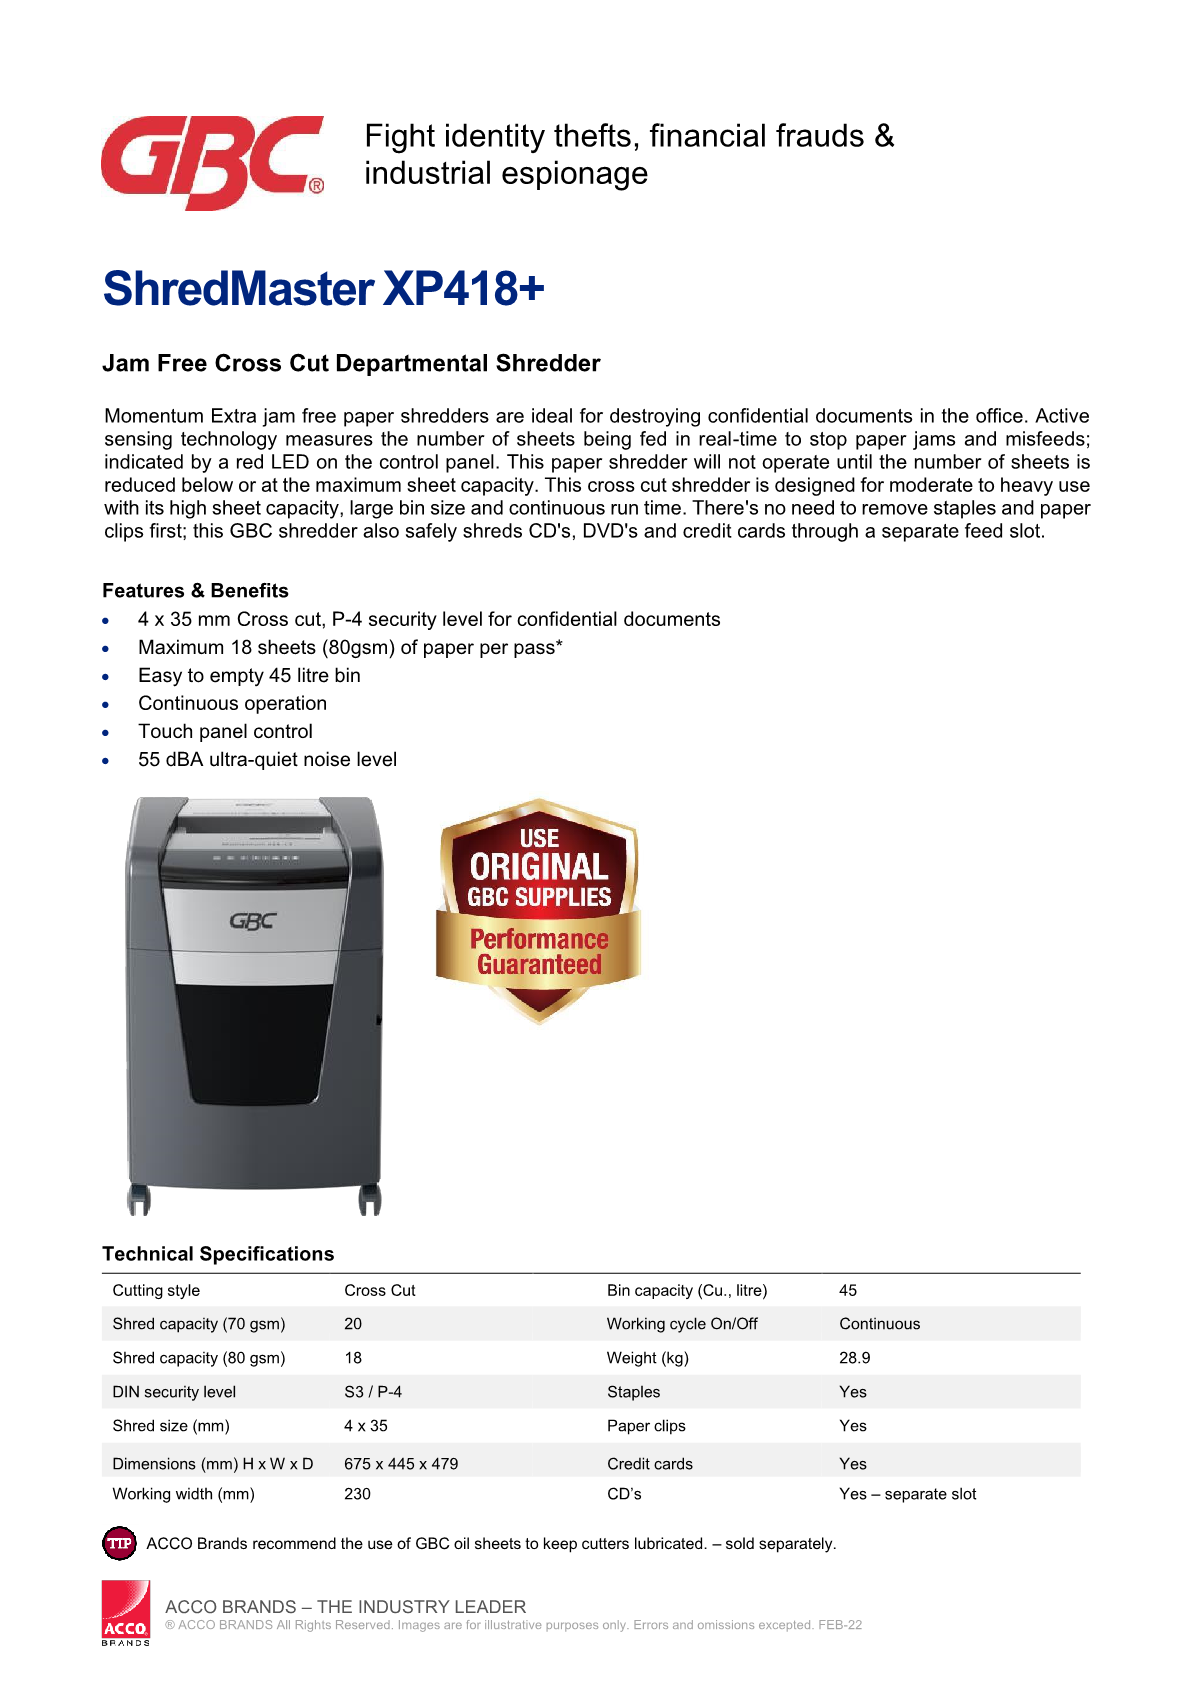 2022-datasheet-shredmaster-xp418-r1.png